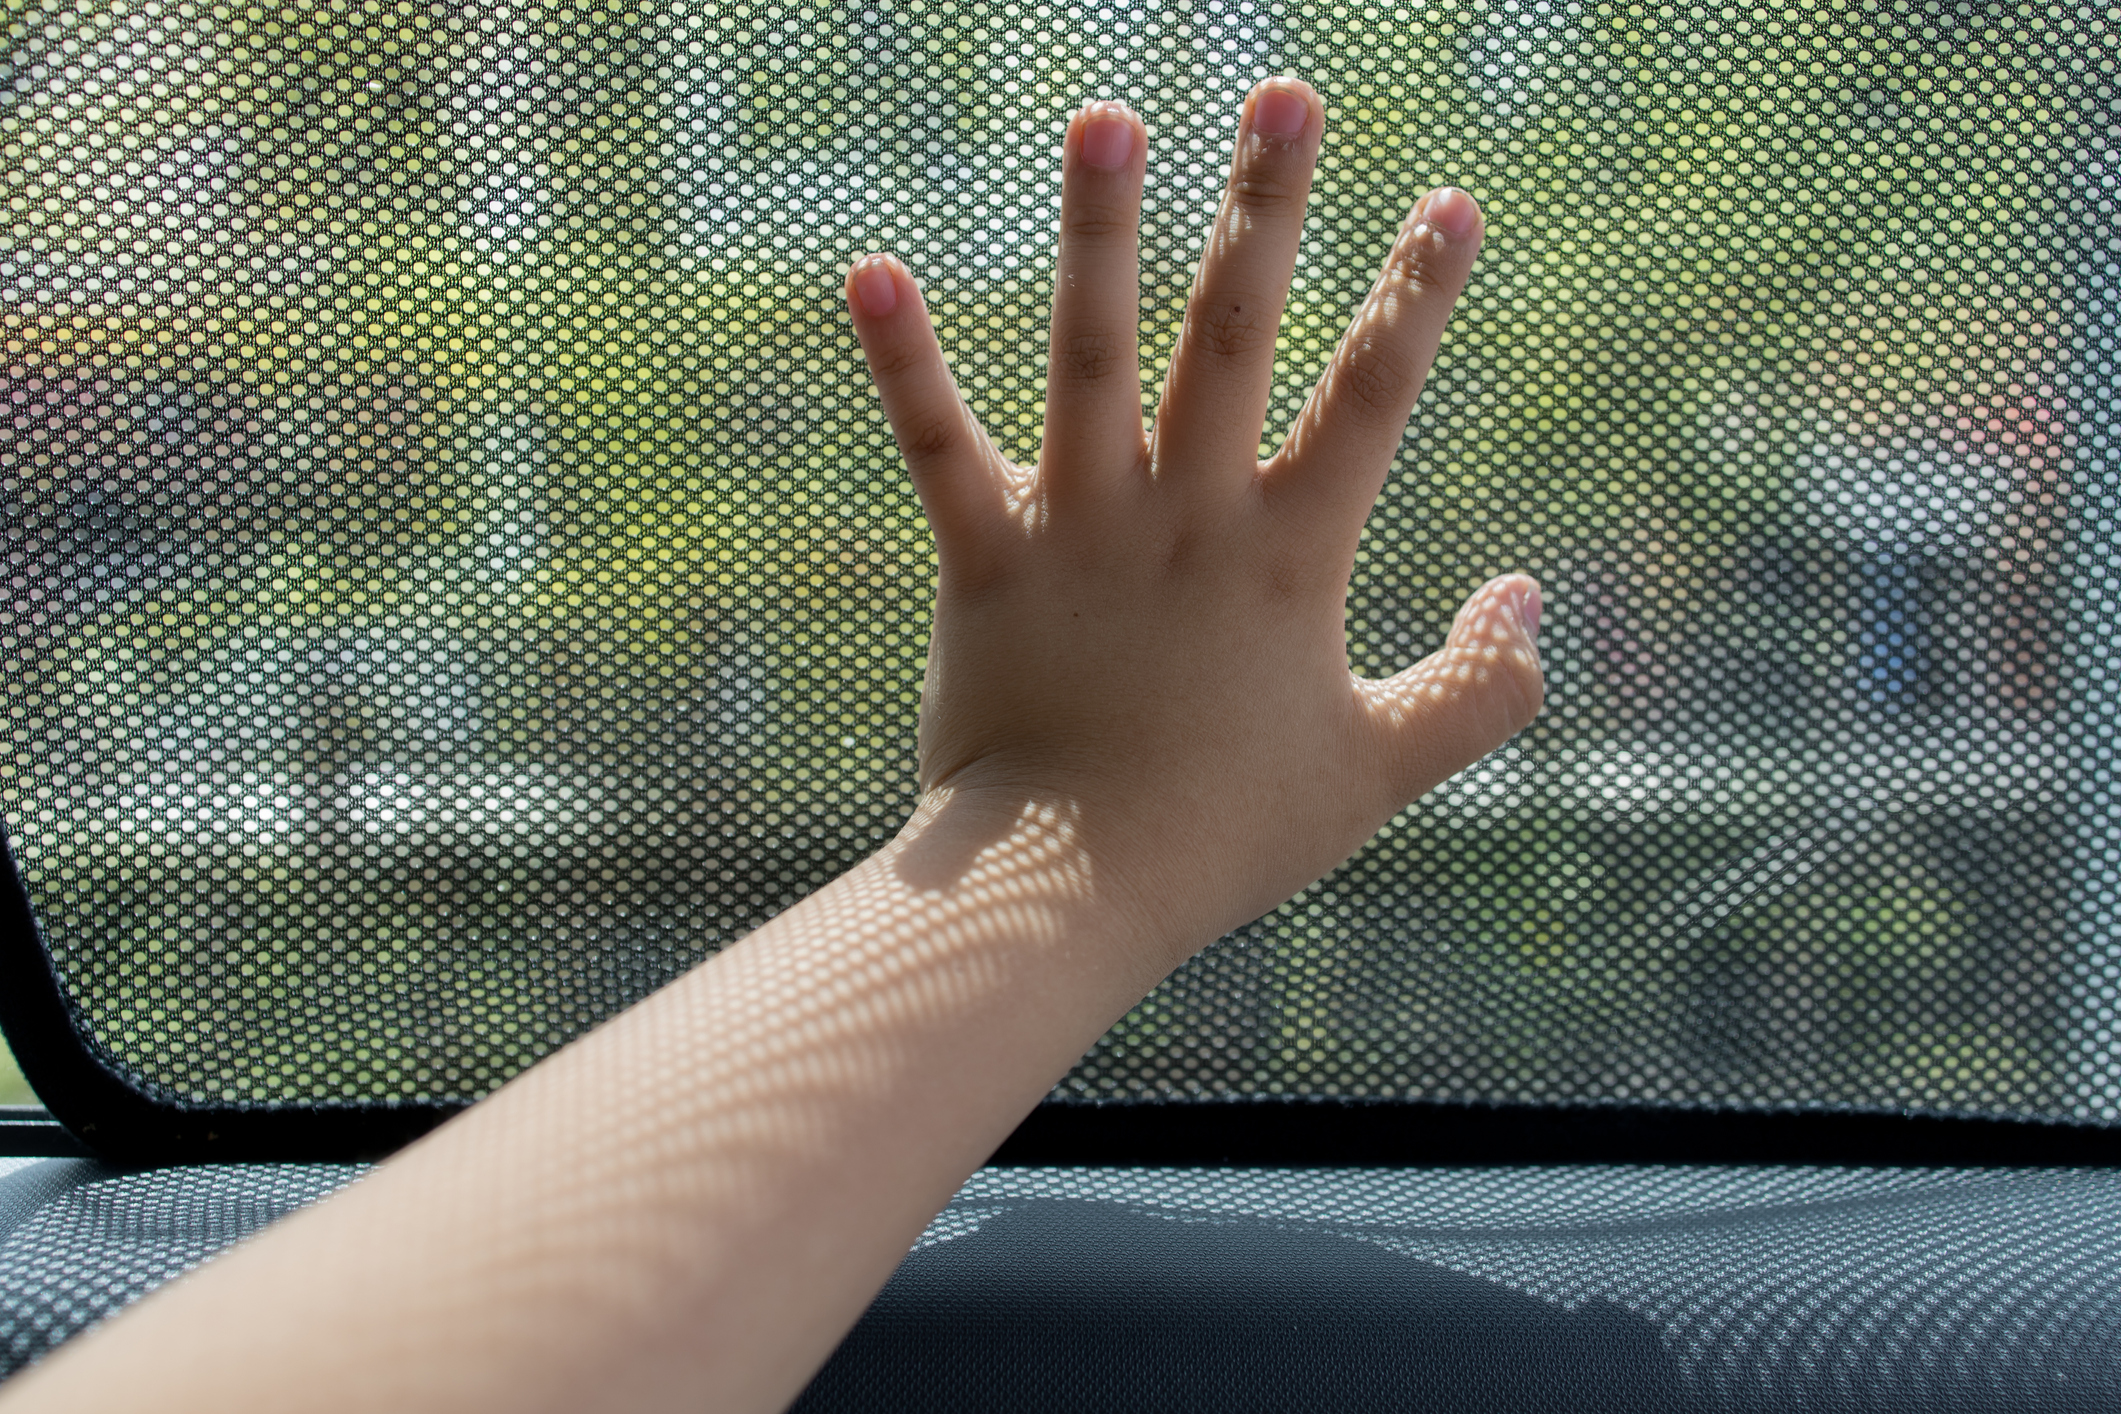 3-5 φορές περισσότερο από του ενηλίκου αυξάνεται ο κίνδυνος θερμοπληξίας στα παιδιά που αφήνονται σε κλειστά αυτοκίνητα